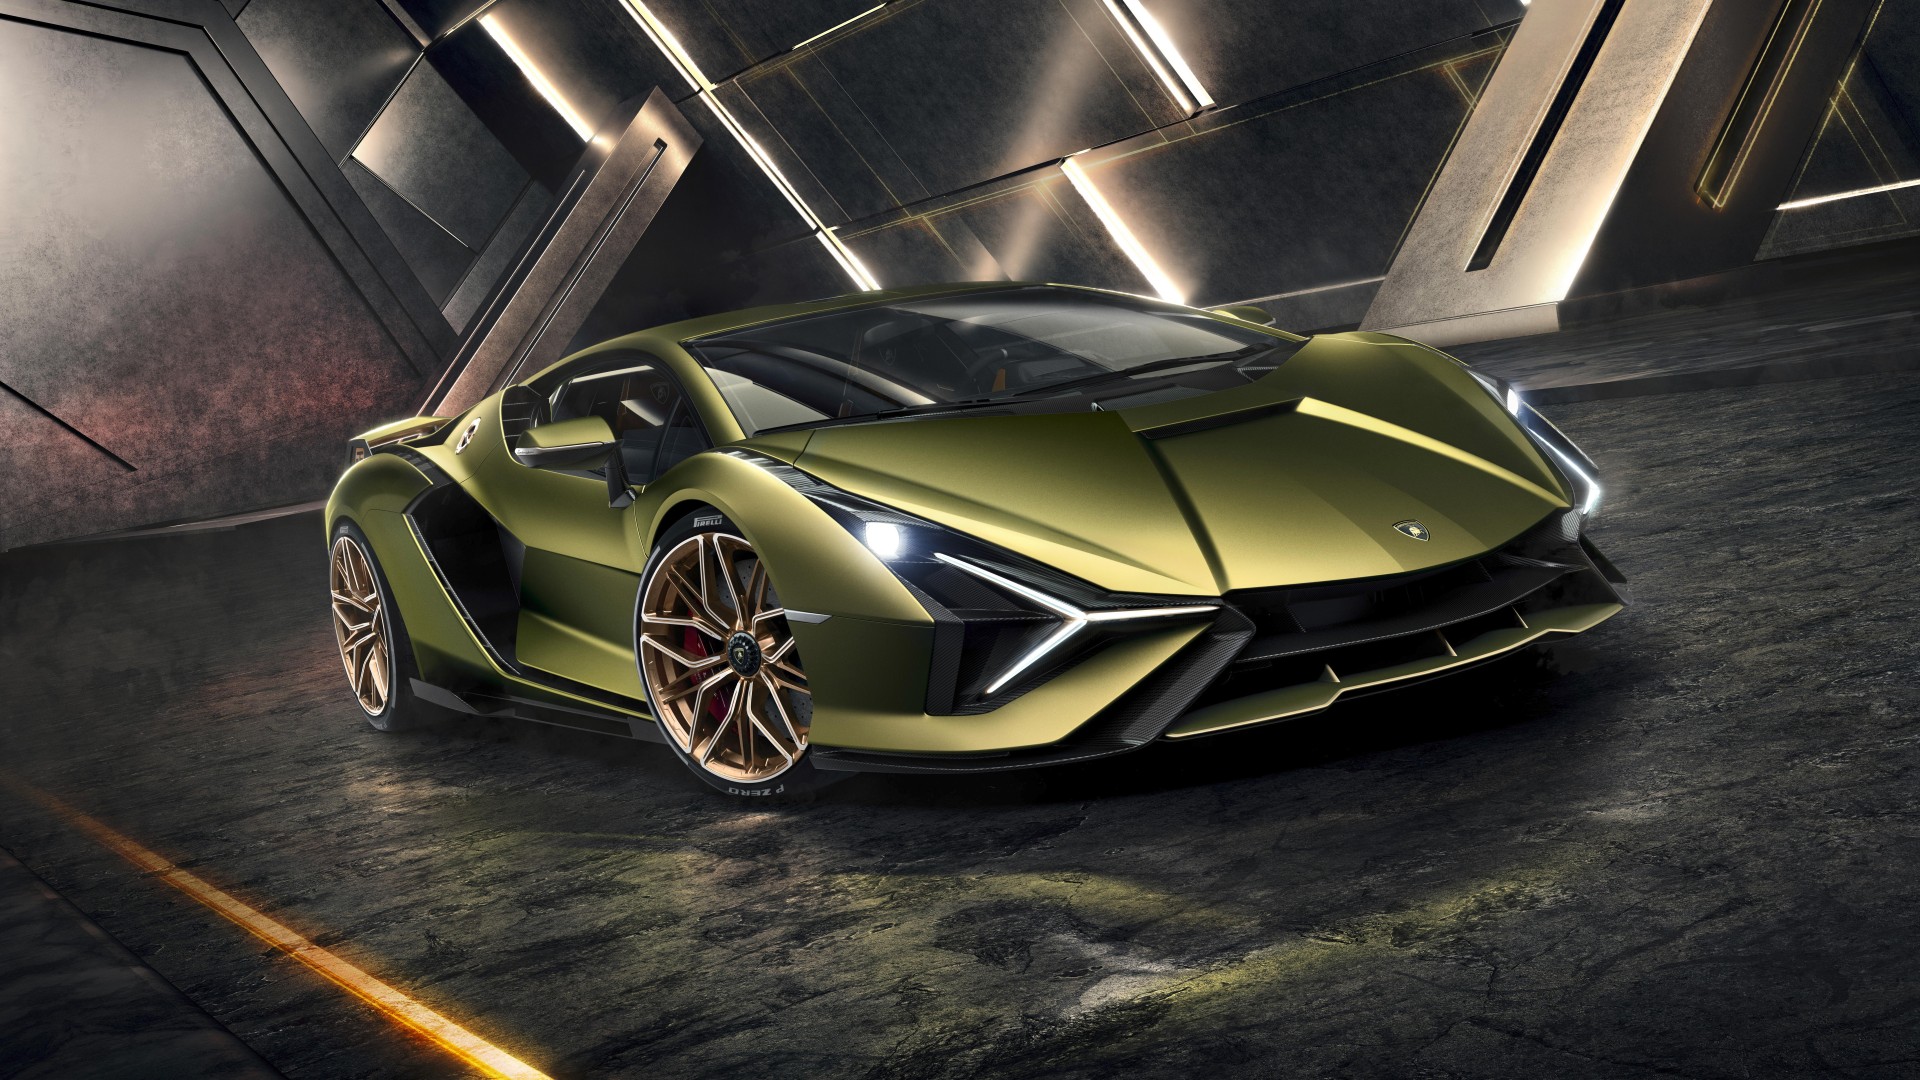 Lamborghini Sian 2019 4K 7 Wallpaper | HD Car Wallpapers | ID #13148